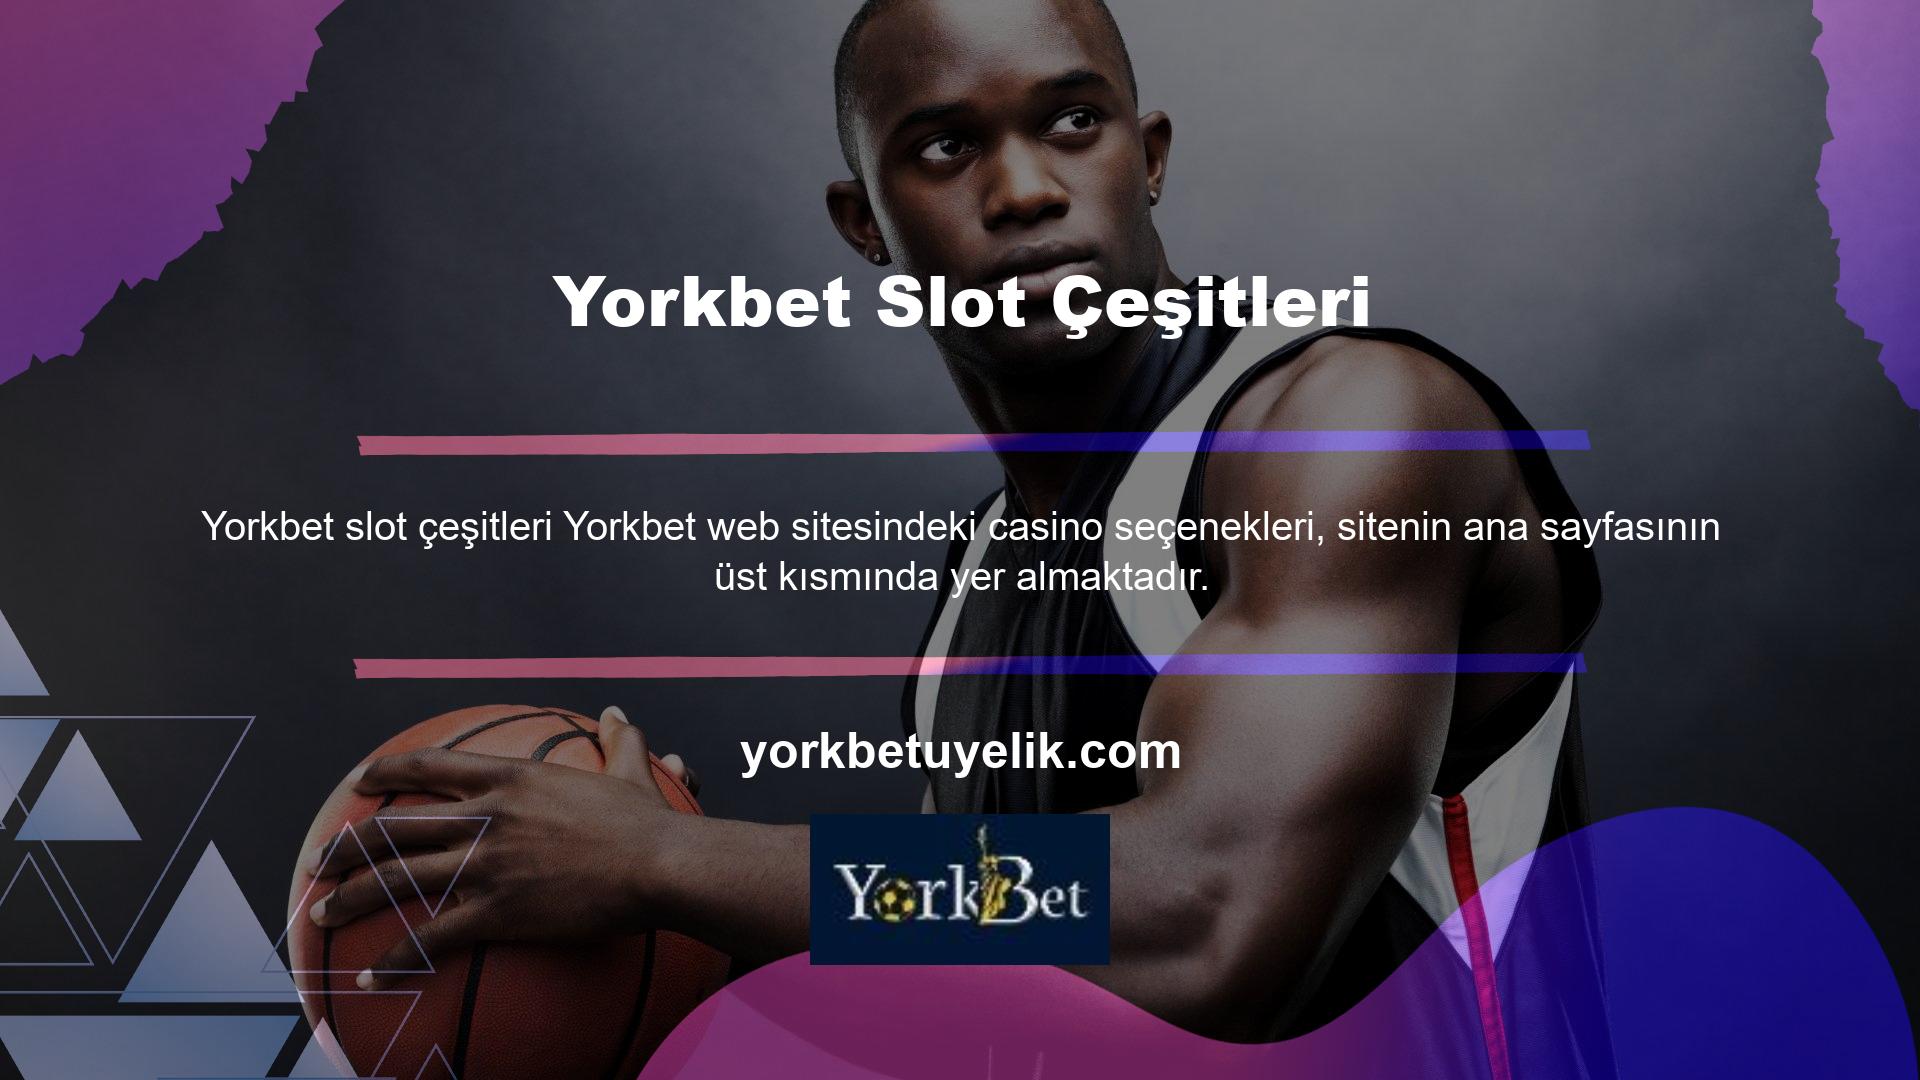 Yorkbet web sitesi casino oyunları, bahis meraklıları için casino dünyasının en popüler ve önemli oyun seçeneklerinden biridir